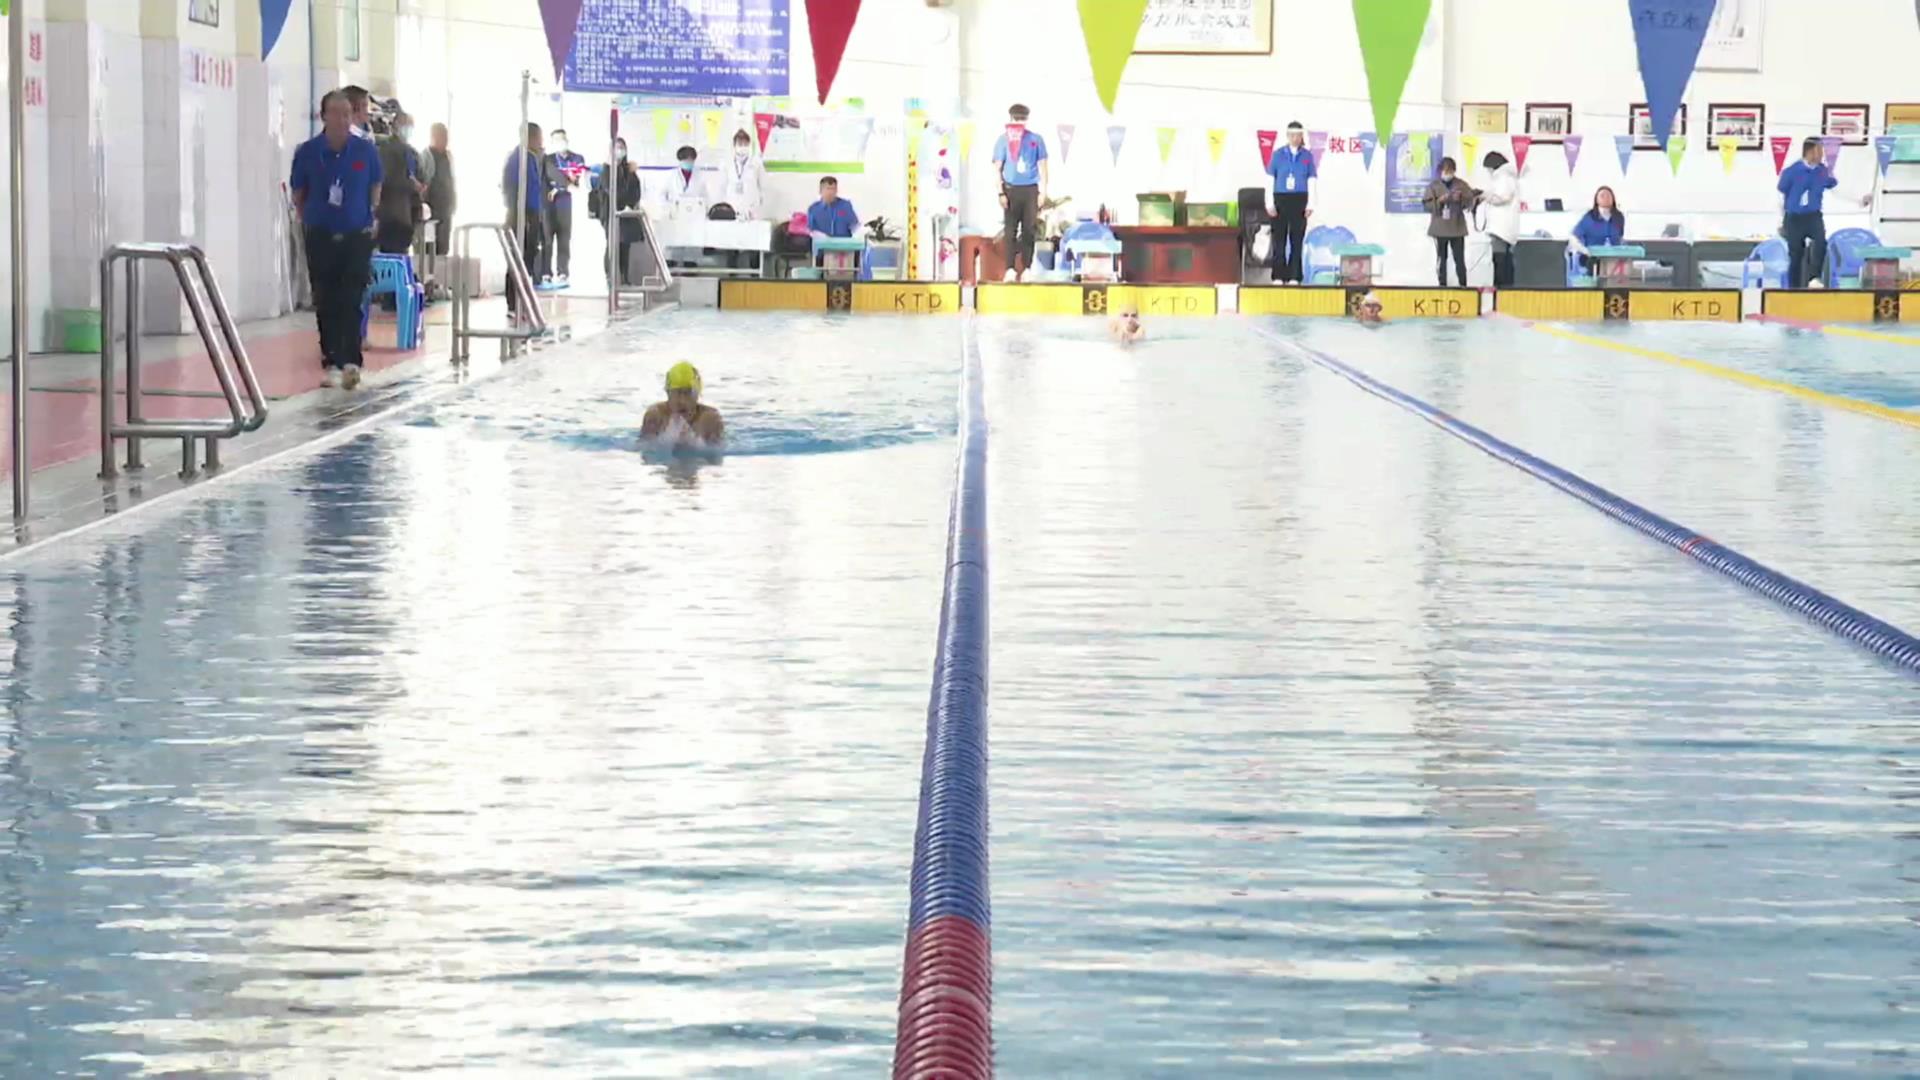 云南省青少年学生游泳锦标赛暨云南省第十六届运动会青少年组游泳预赛在蒙自市举行